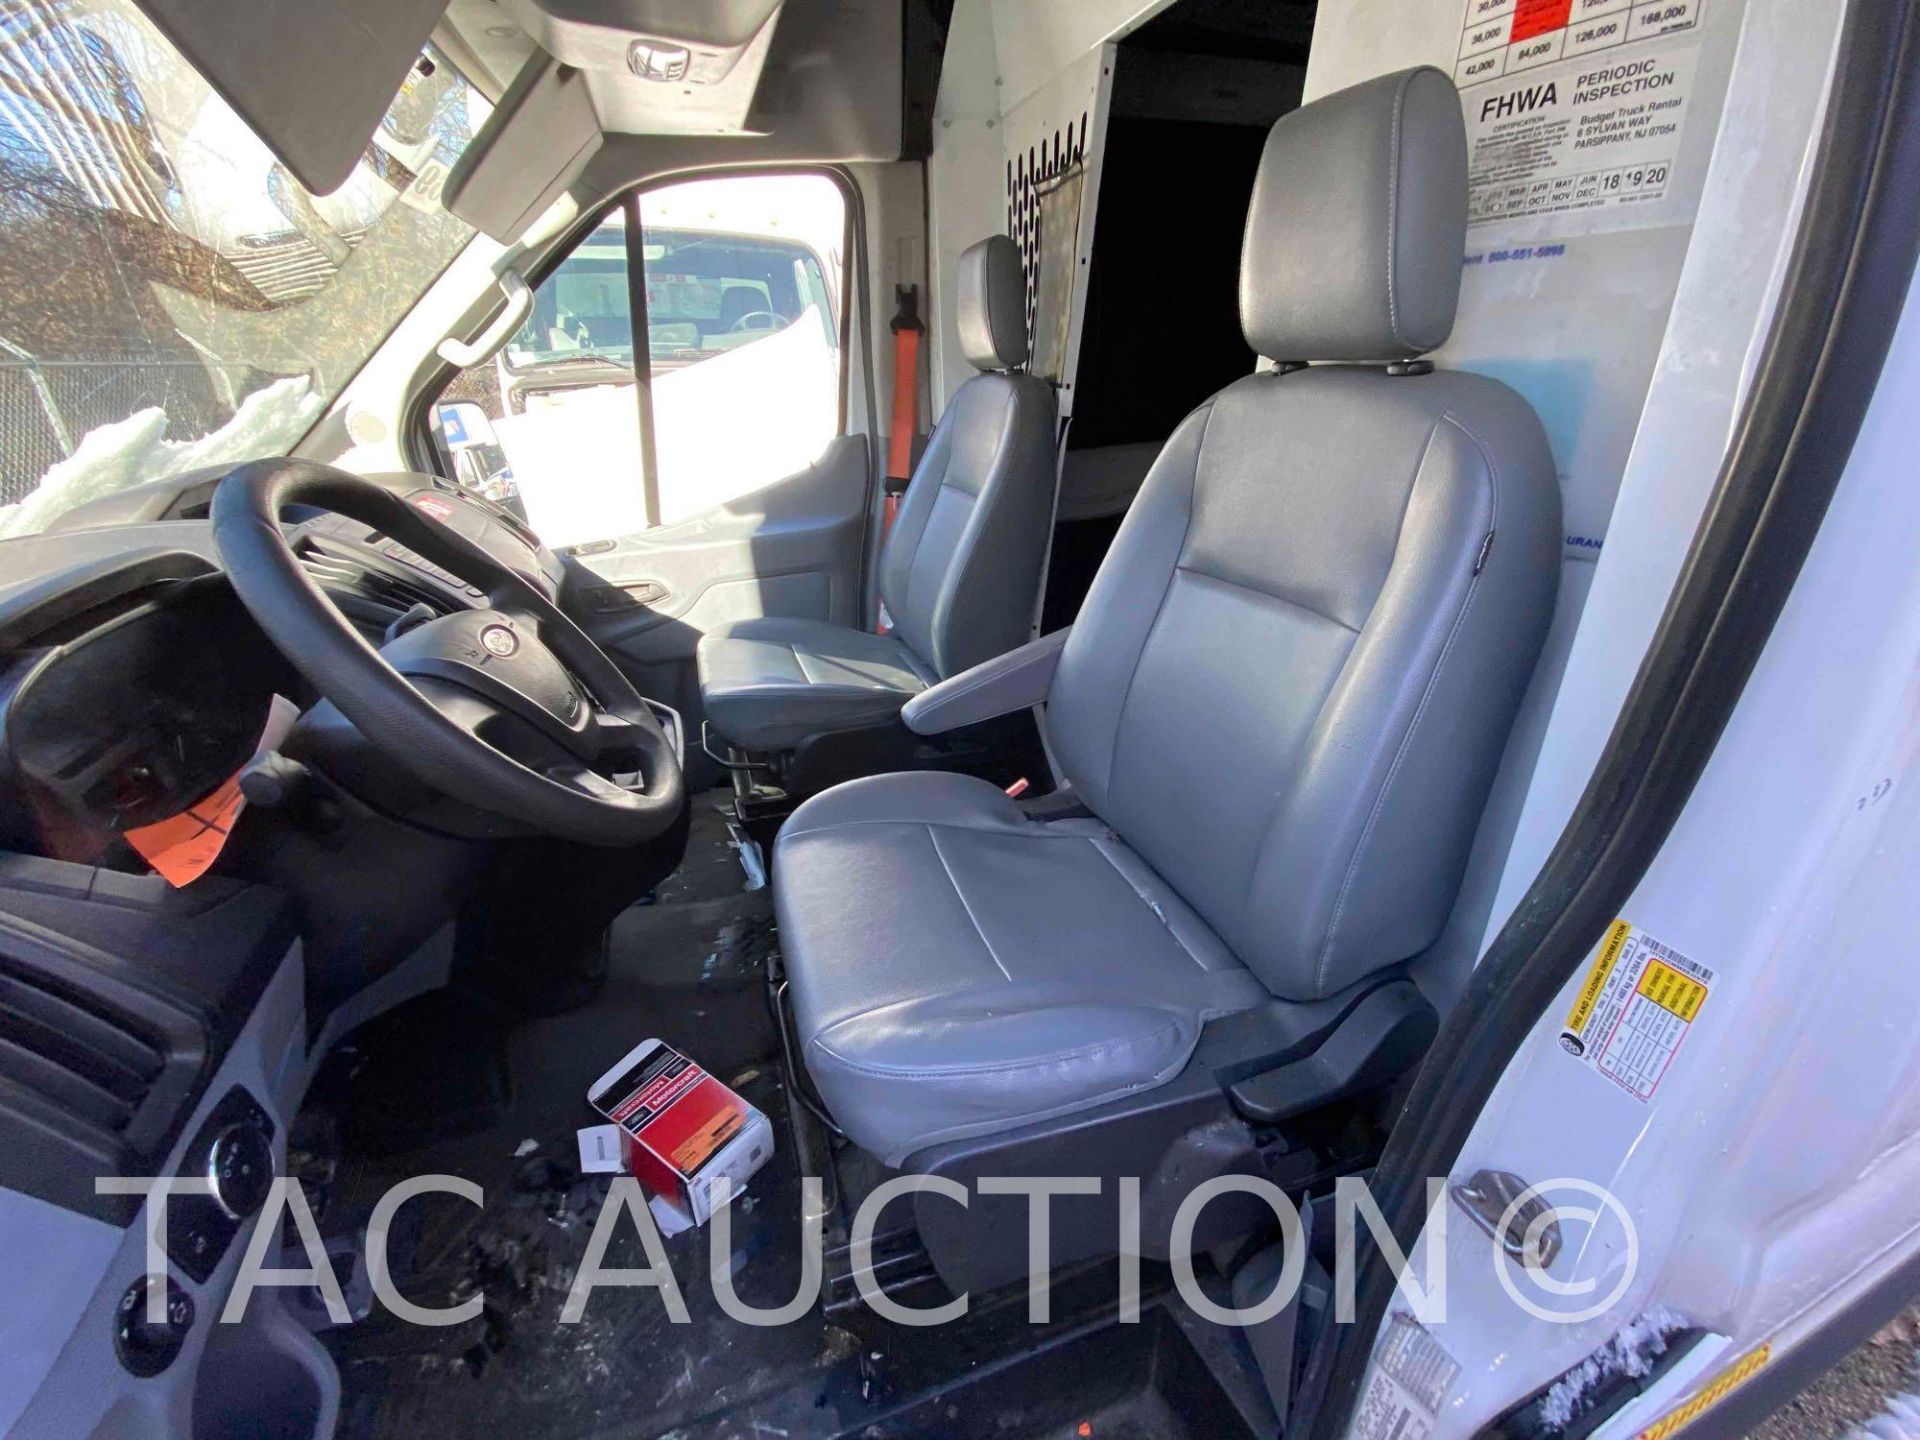 2019 Ford Transit 150 Cargo Van - Image 26 of 44